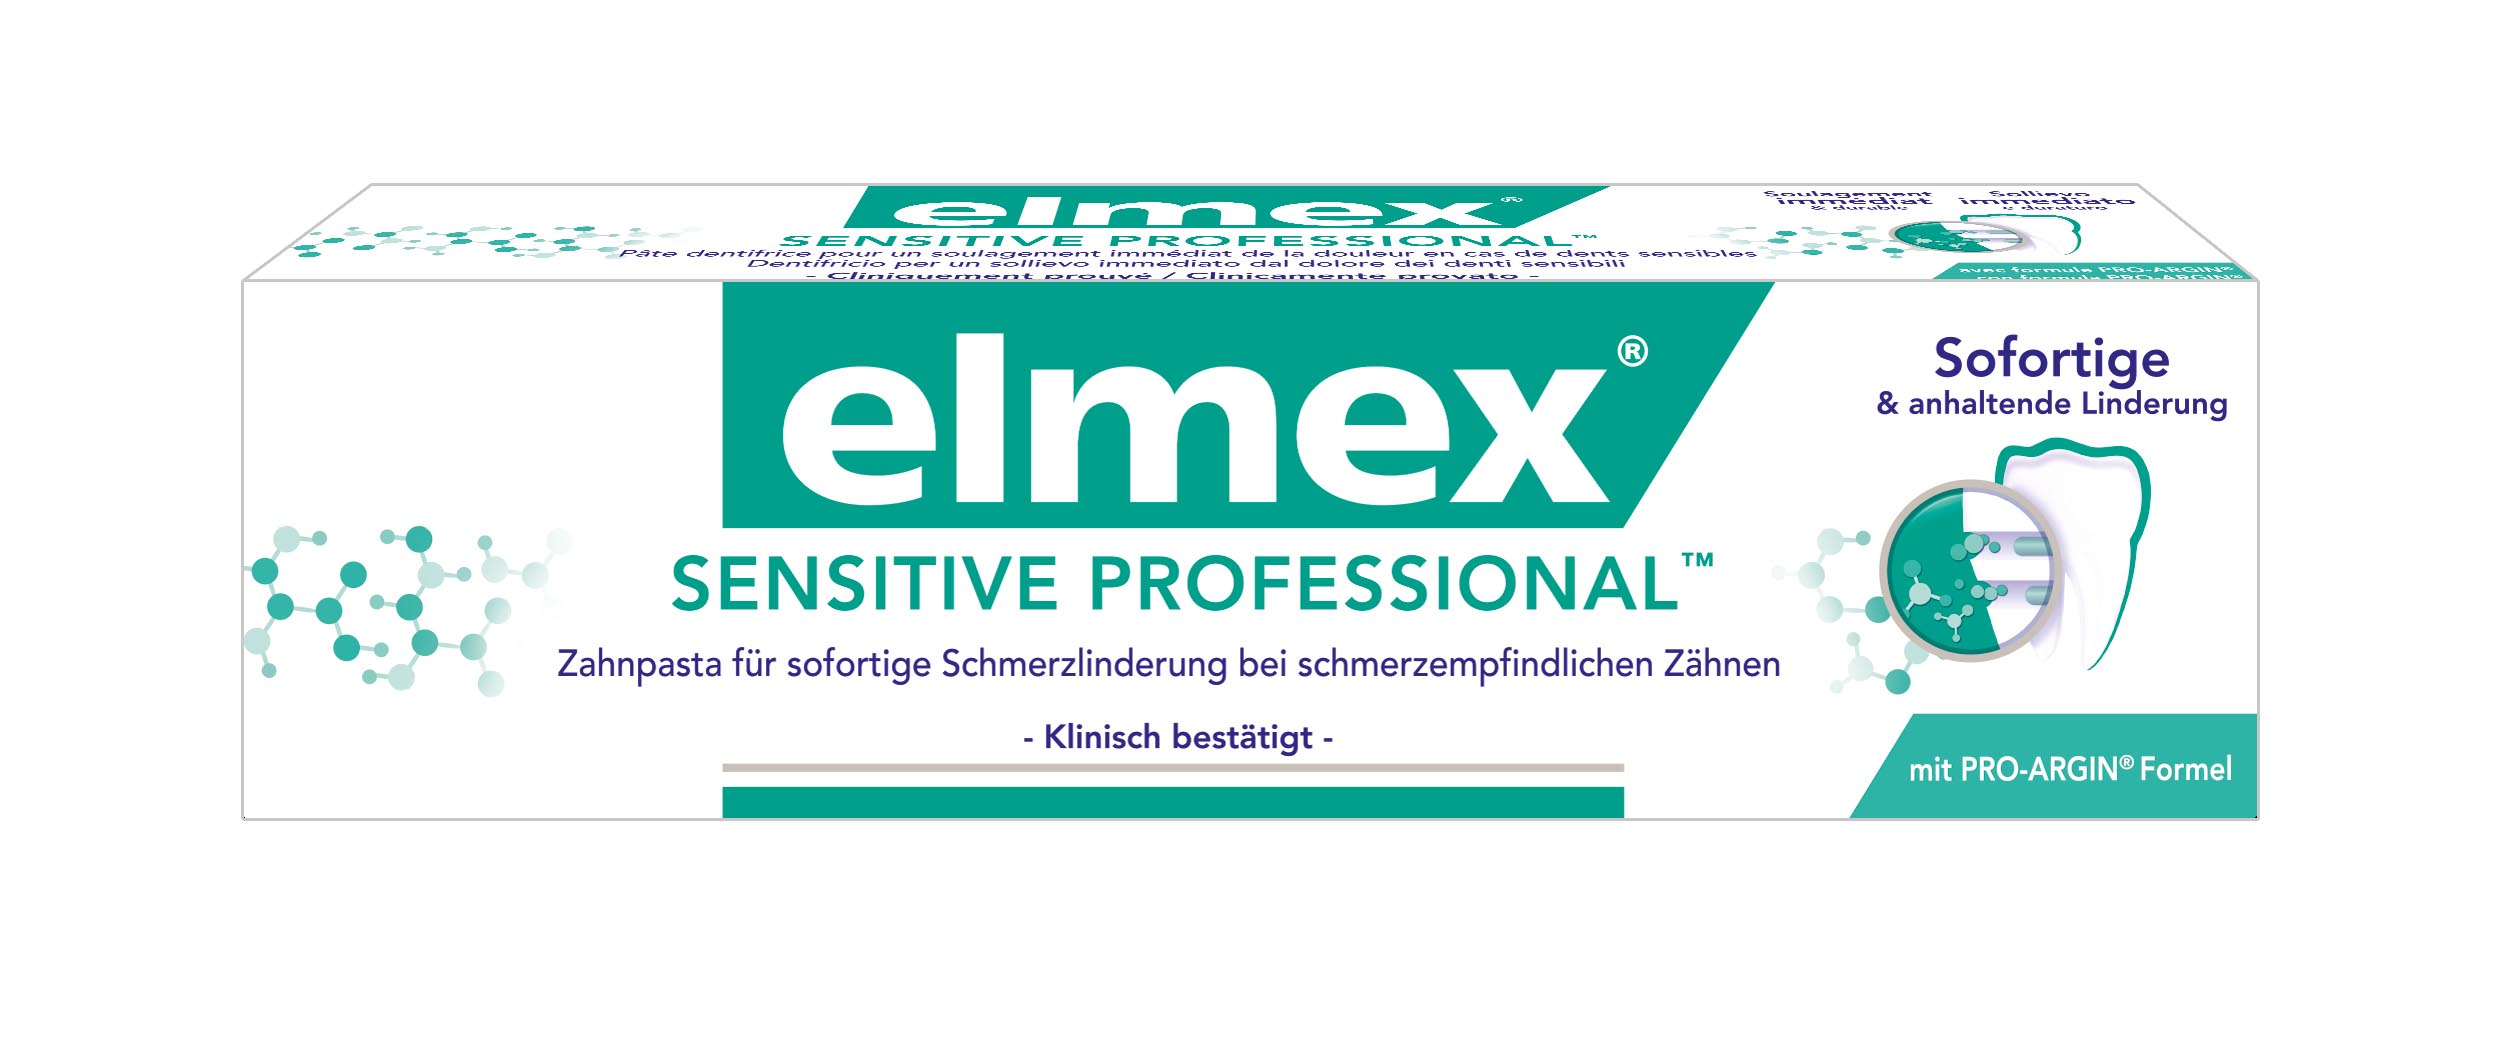 elmex sensitive professional TM